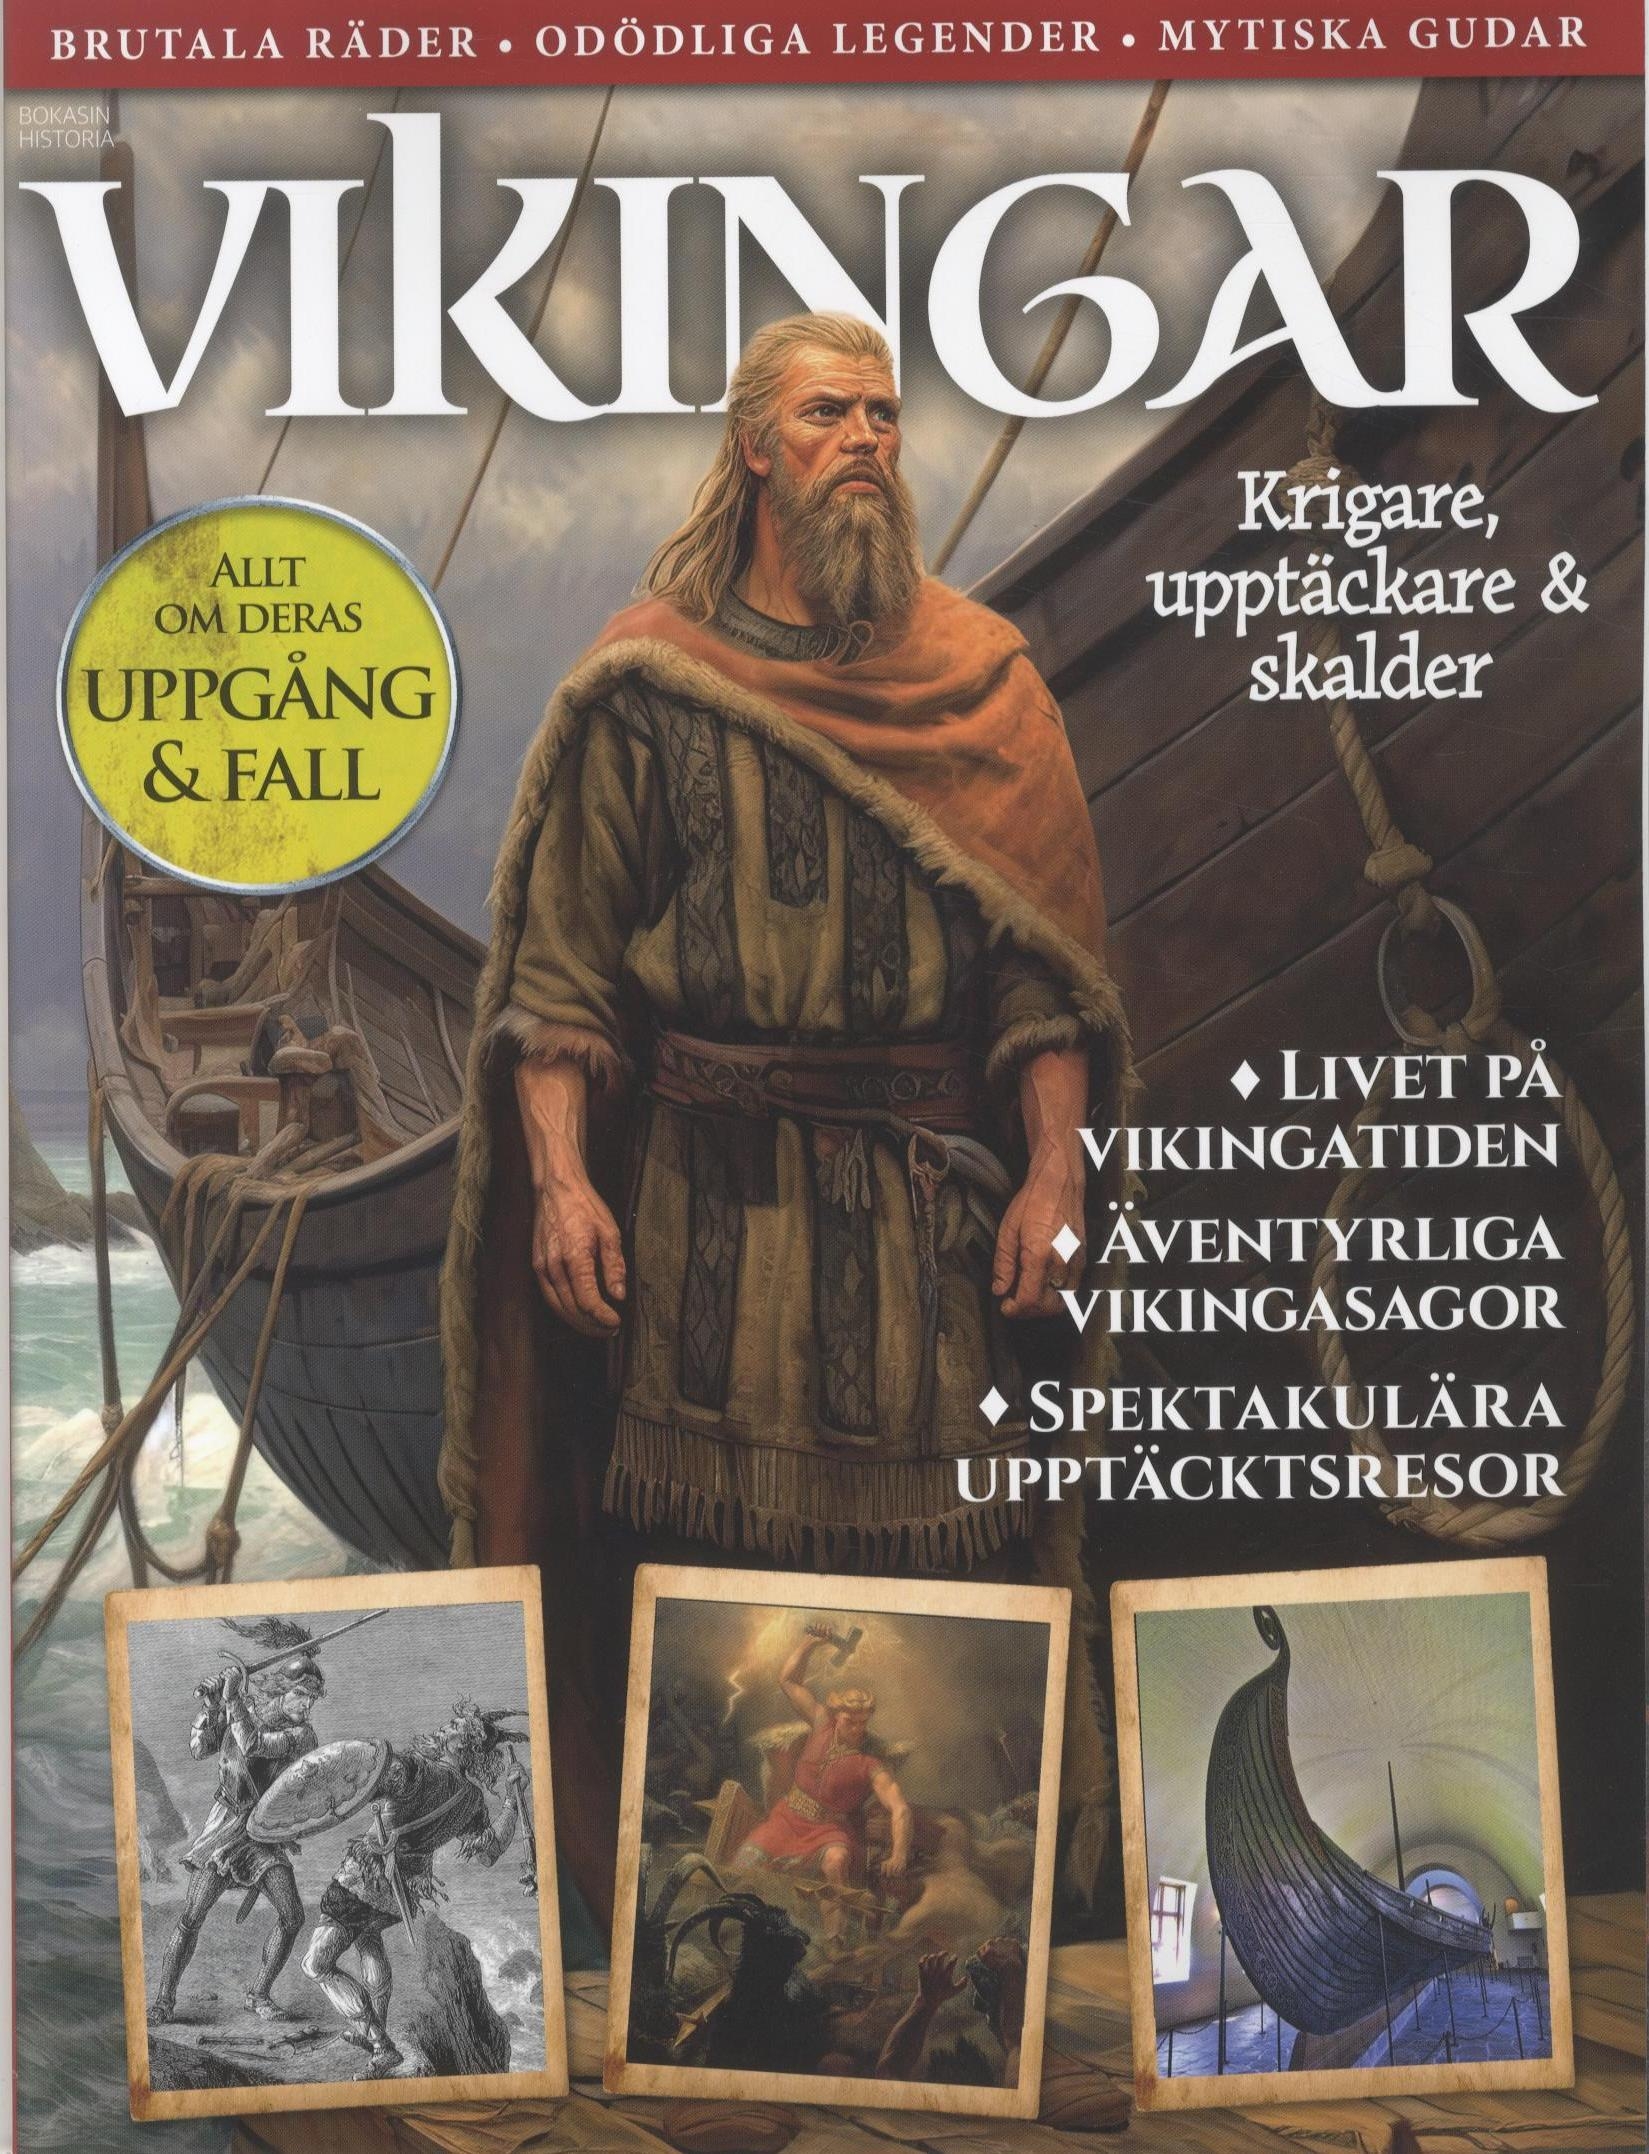 Bokasin Historia Vikingar